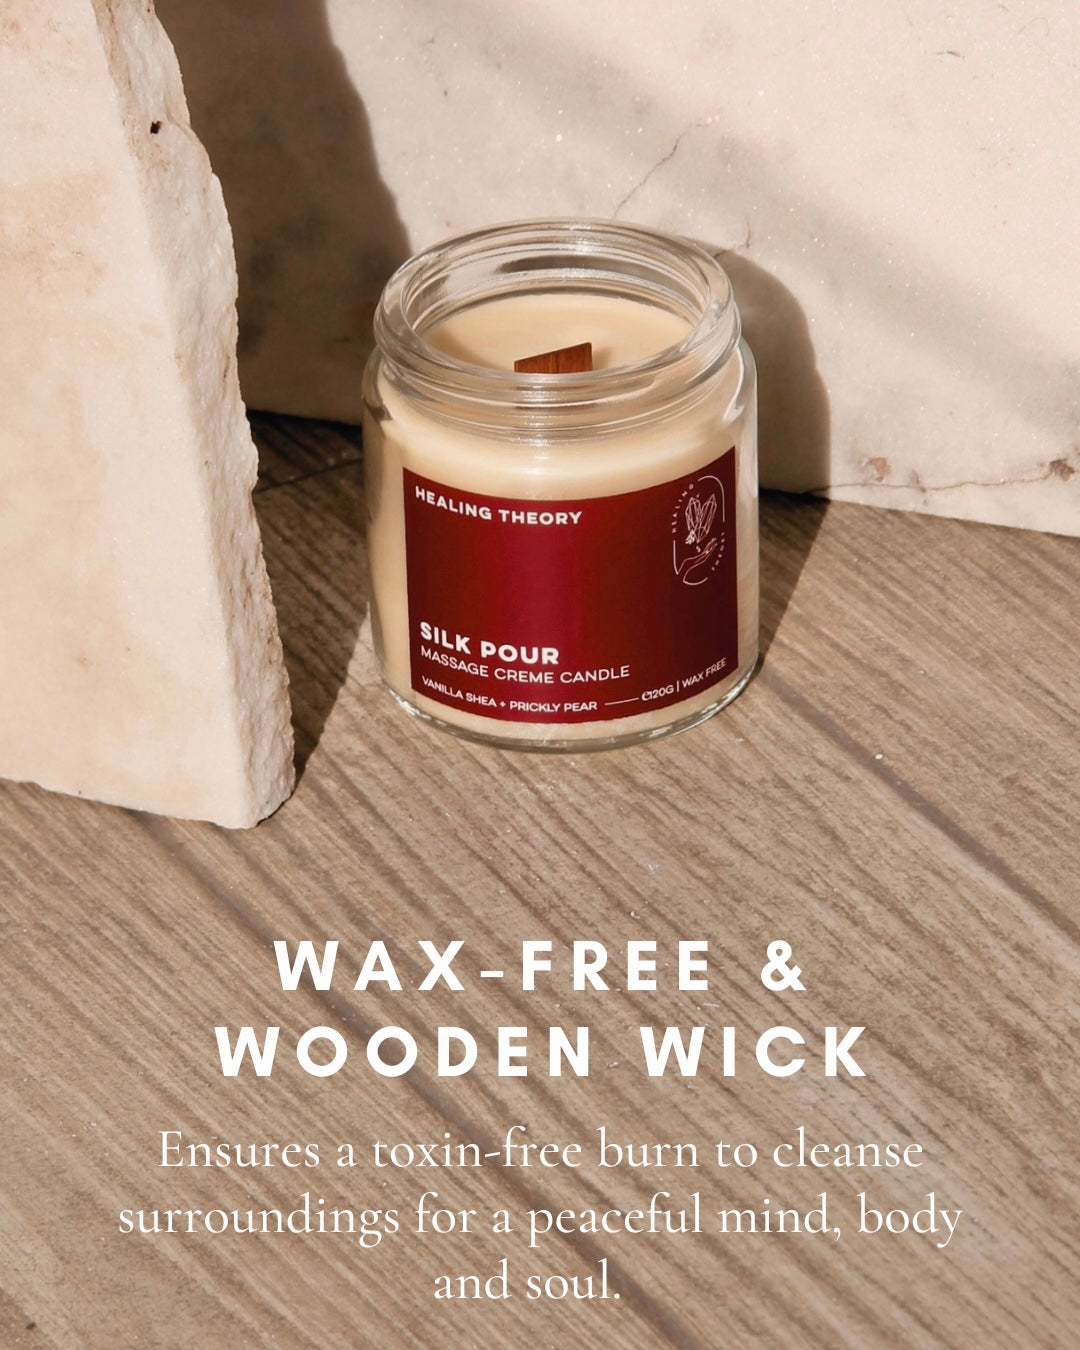 Silk Pour | Massage Creme Candle